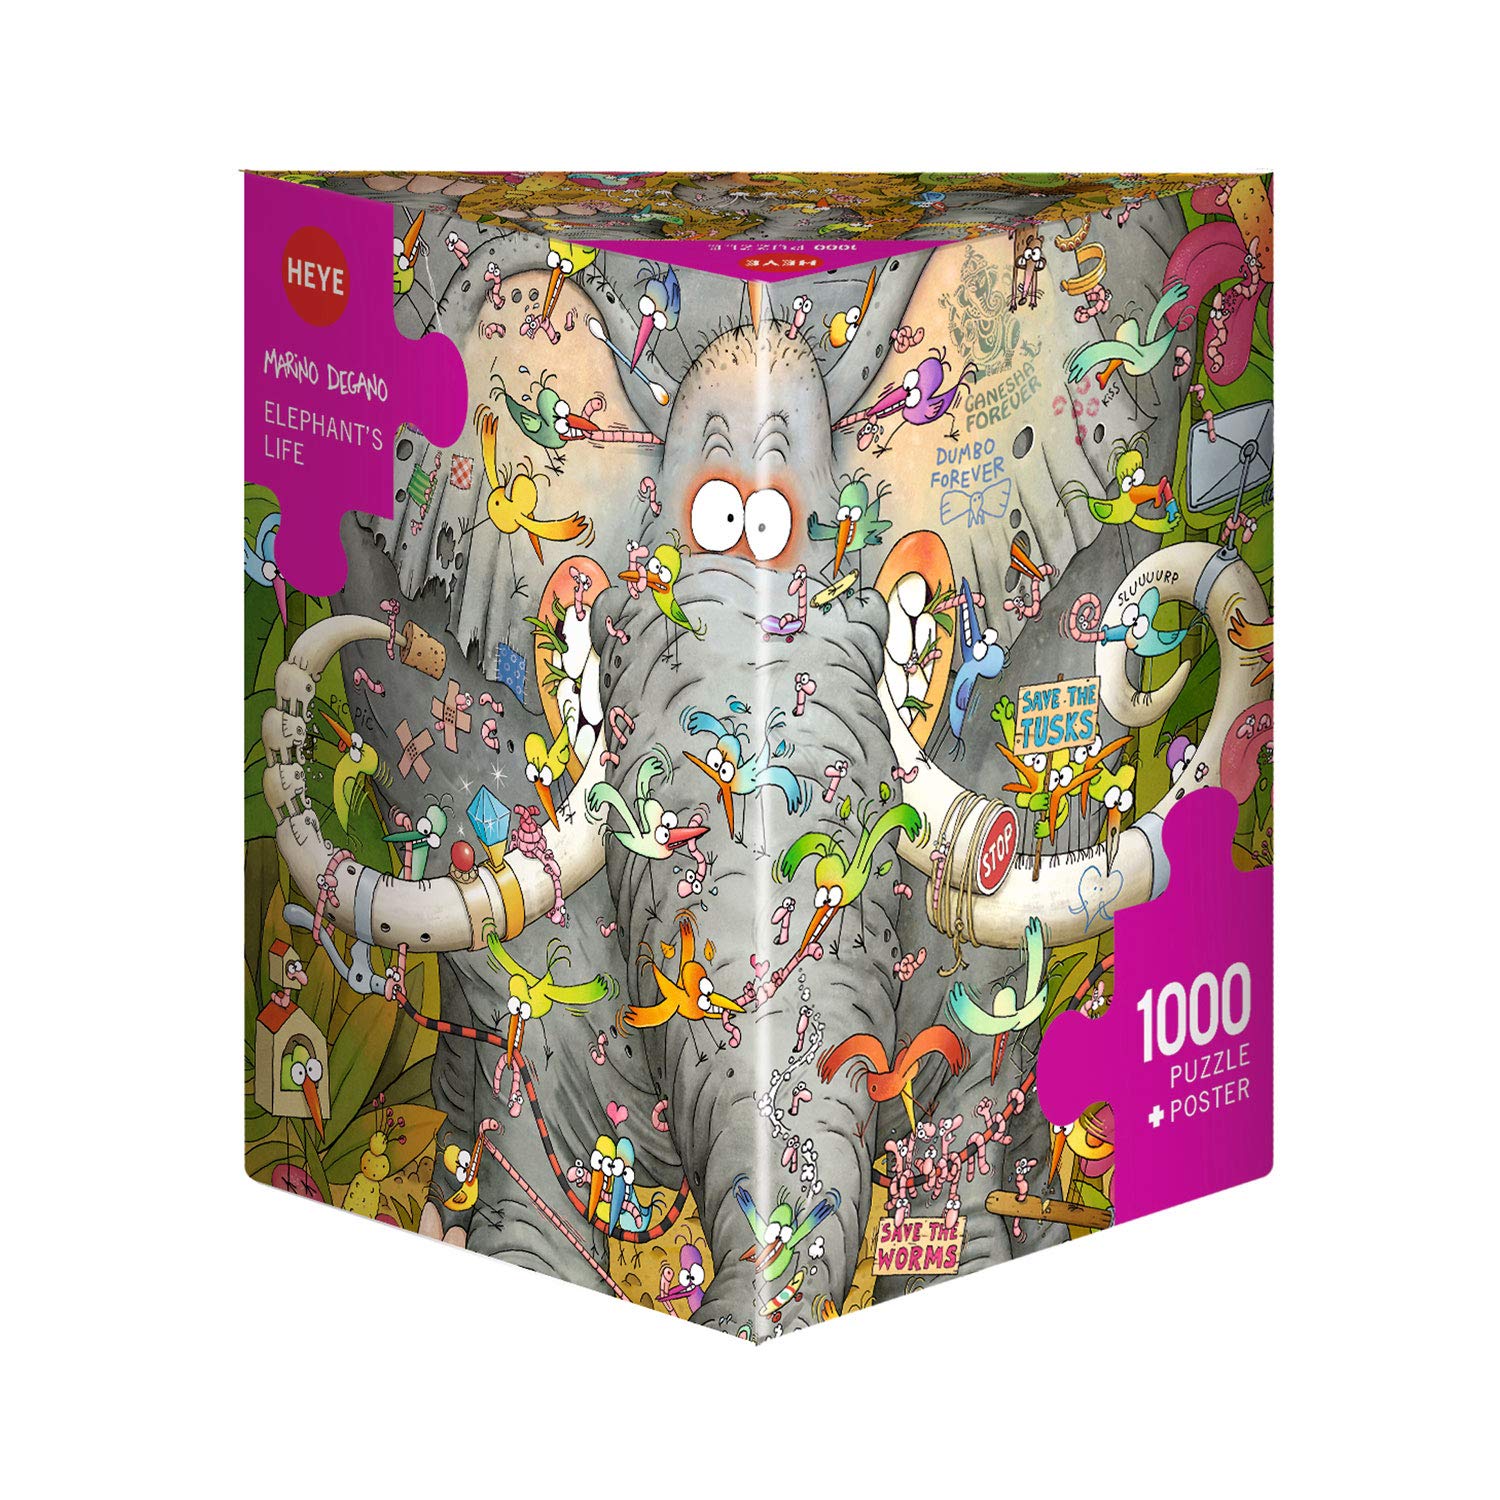 Heye Jigsaw Puzzle - Triangular 1000 Piece - Elephant's Life, Degano